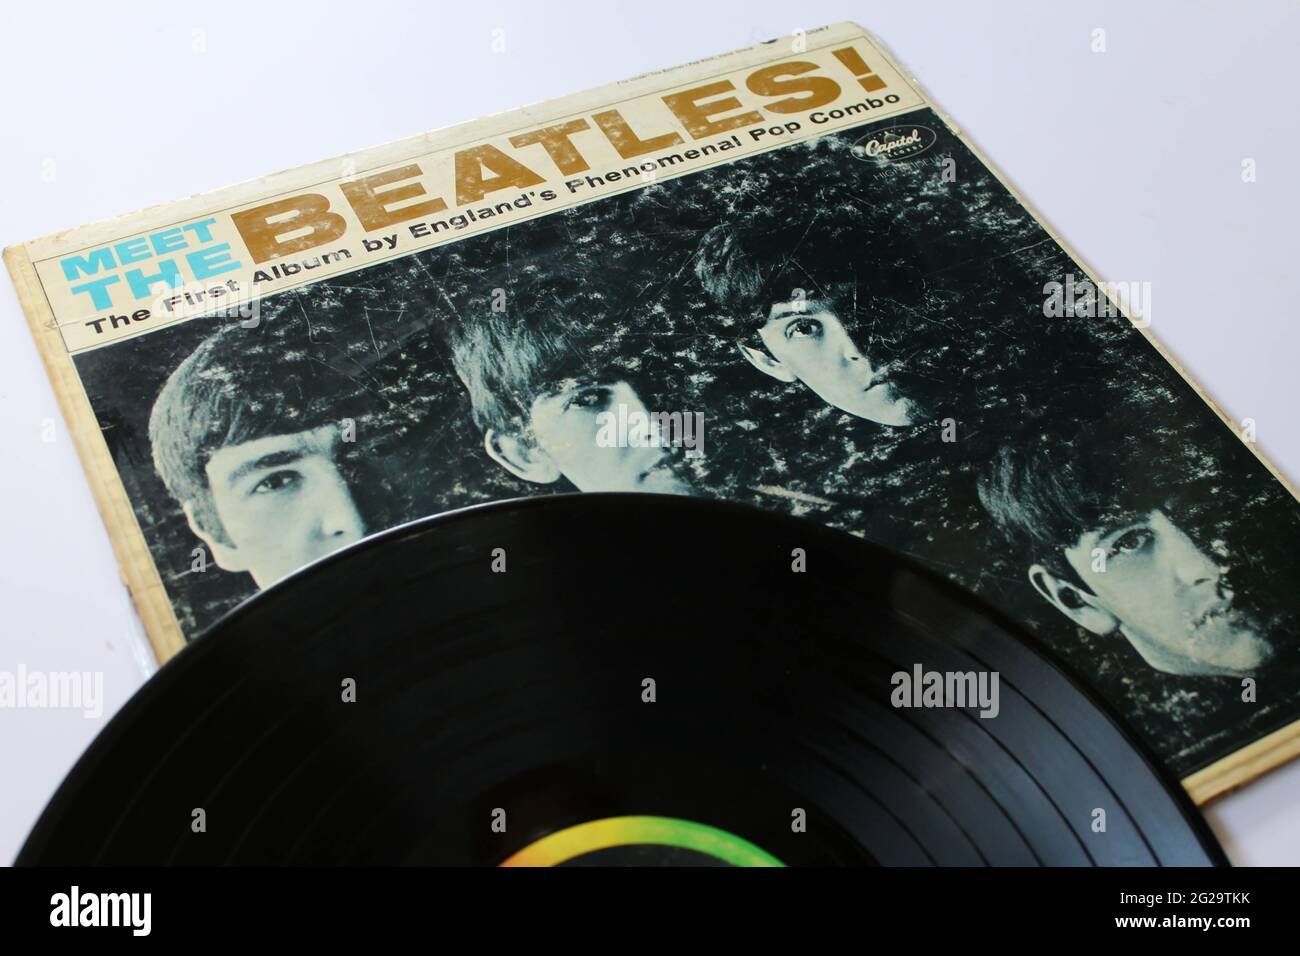 Englische Rockband The Beatles Musikalbum auf Vinyl-LP. Mit dem Titel Meet the Beatles! Dies ist das erste amerikanische Album. Albumcover Stockfoto